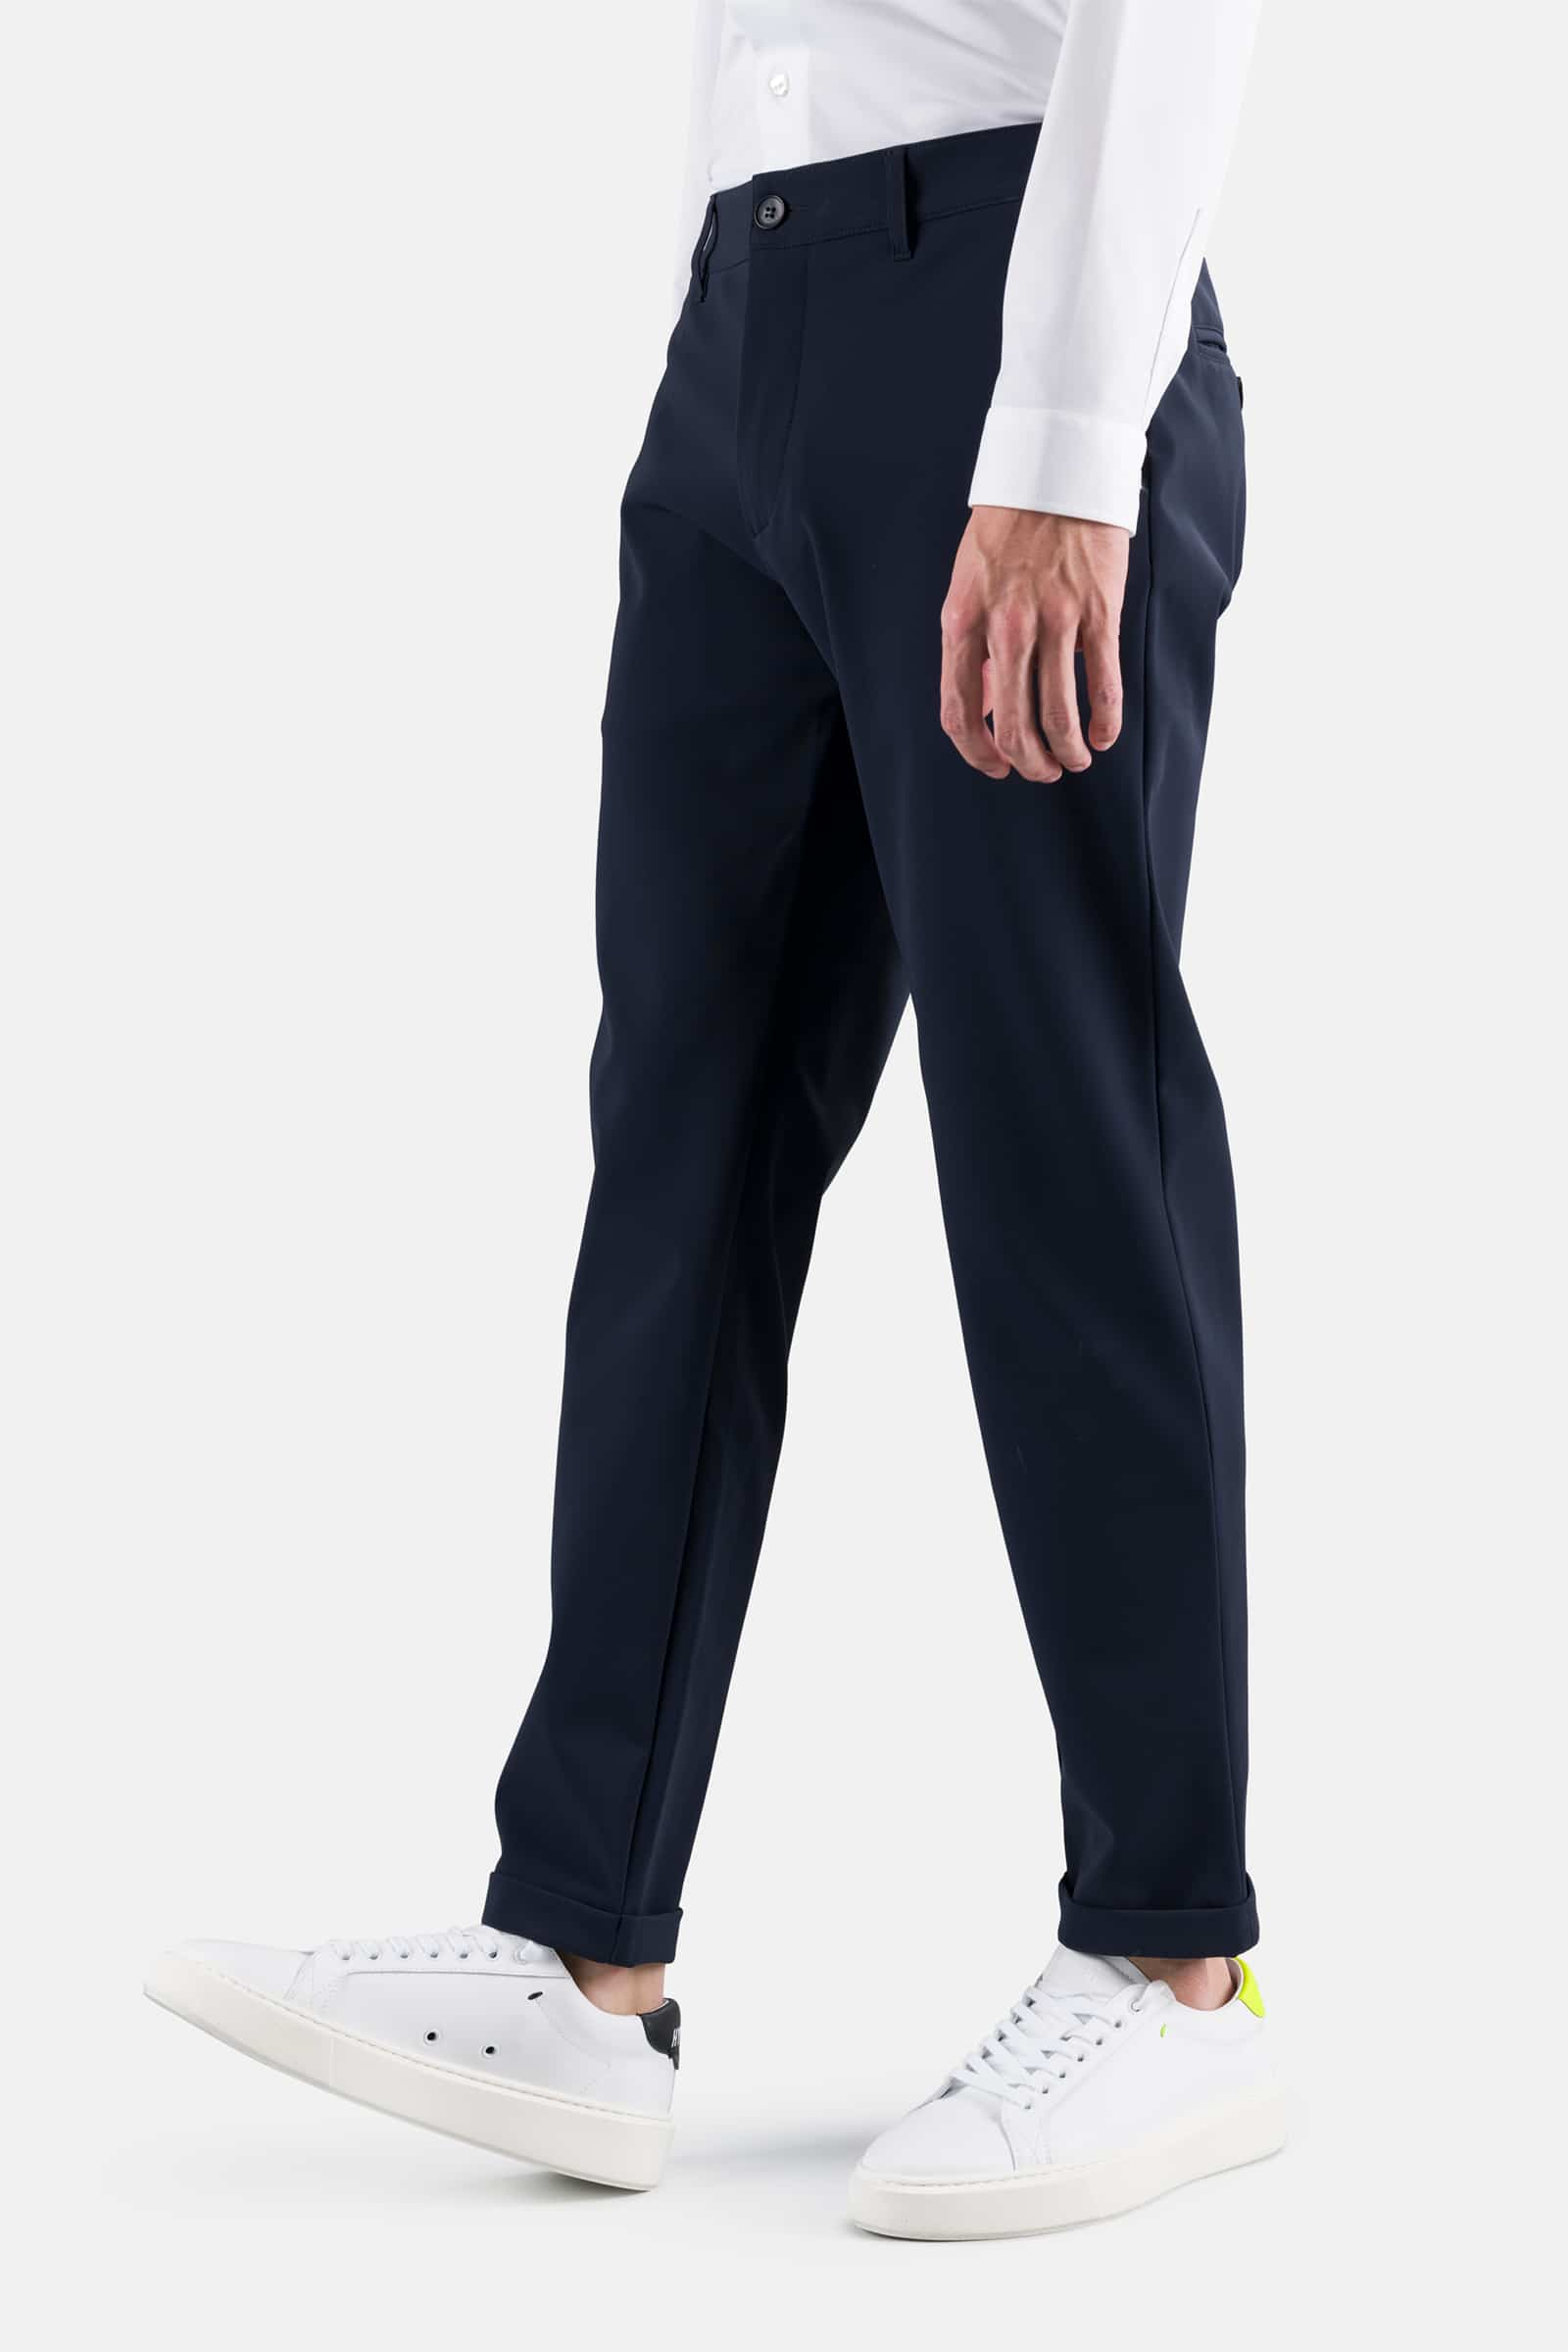 CLASSIC PANTS - BLUE CHECK - Hydrogen - Luxury Sportwear